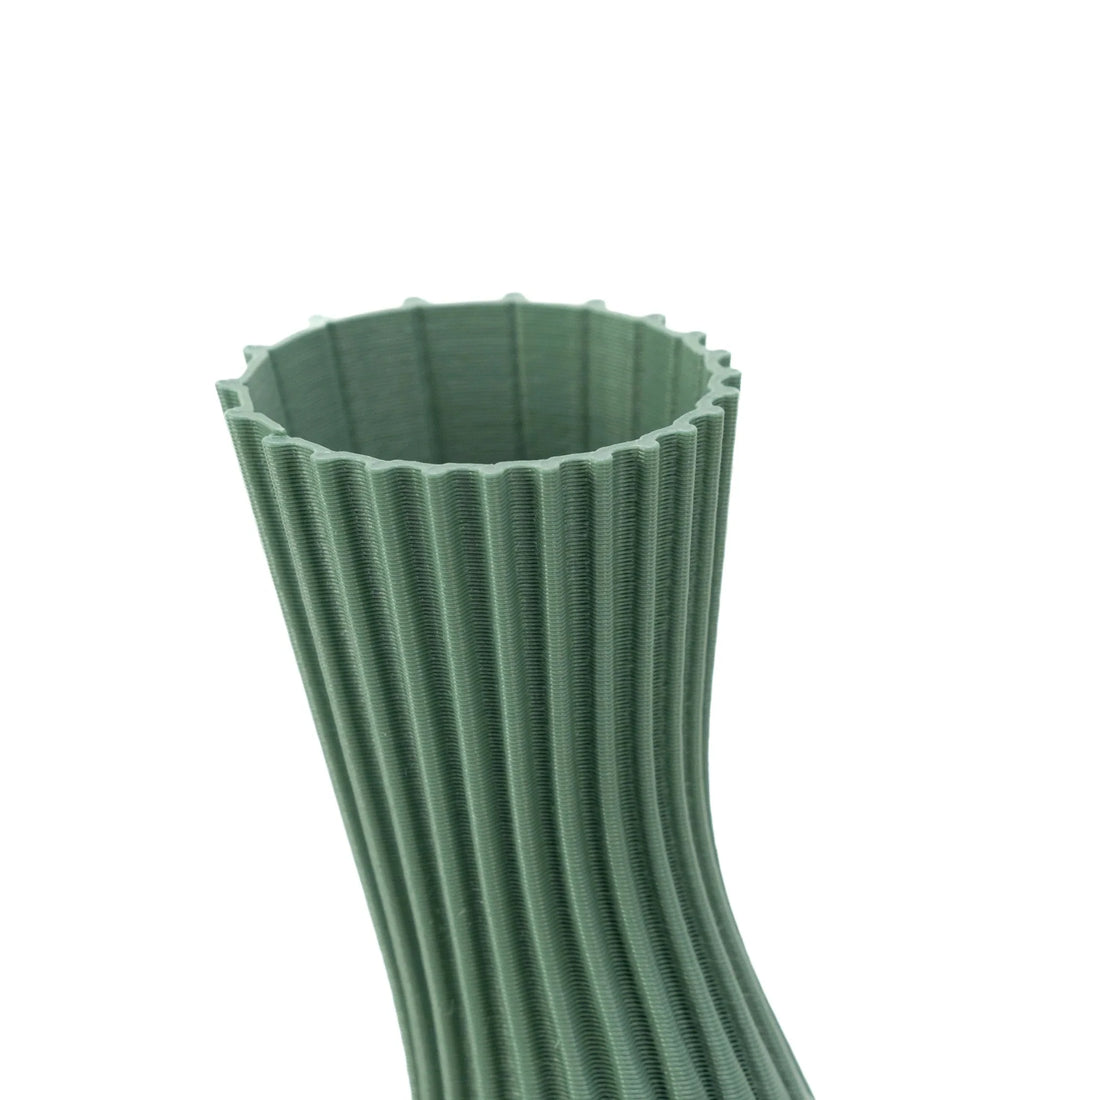 Vase Conan ocre par Cyrc design